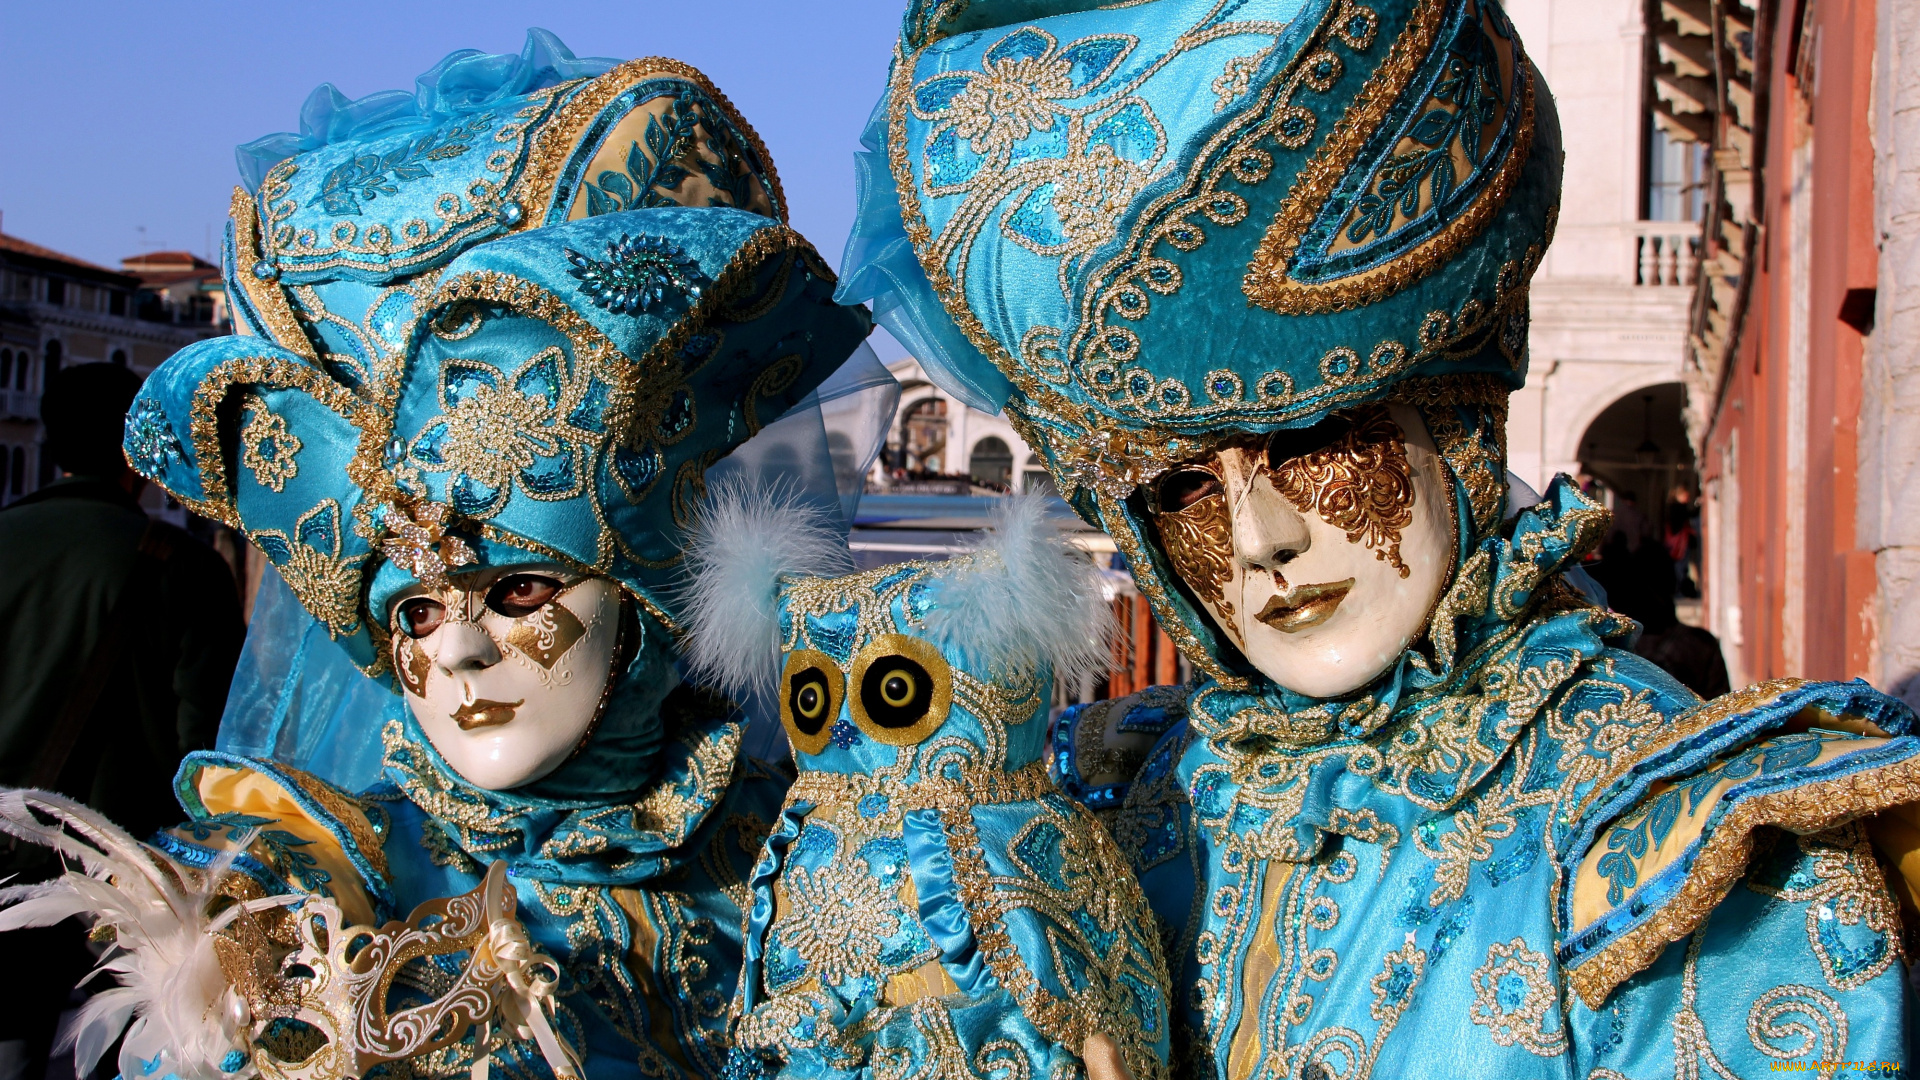 разное, маски, карнавальные, костюмы, голубой, сова, вышивка, карнавал, венеция